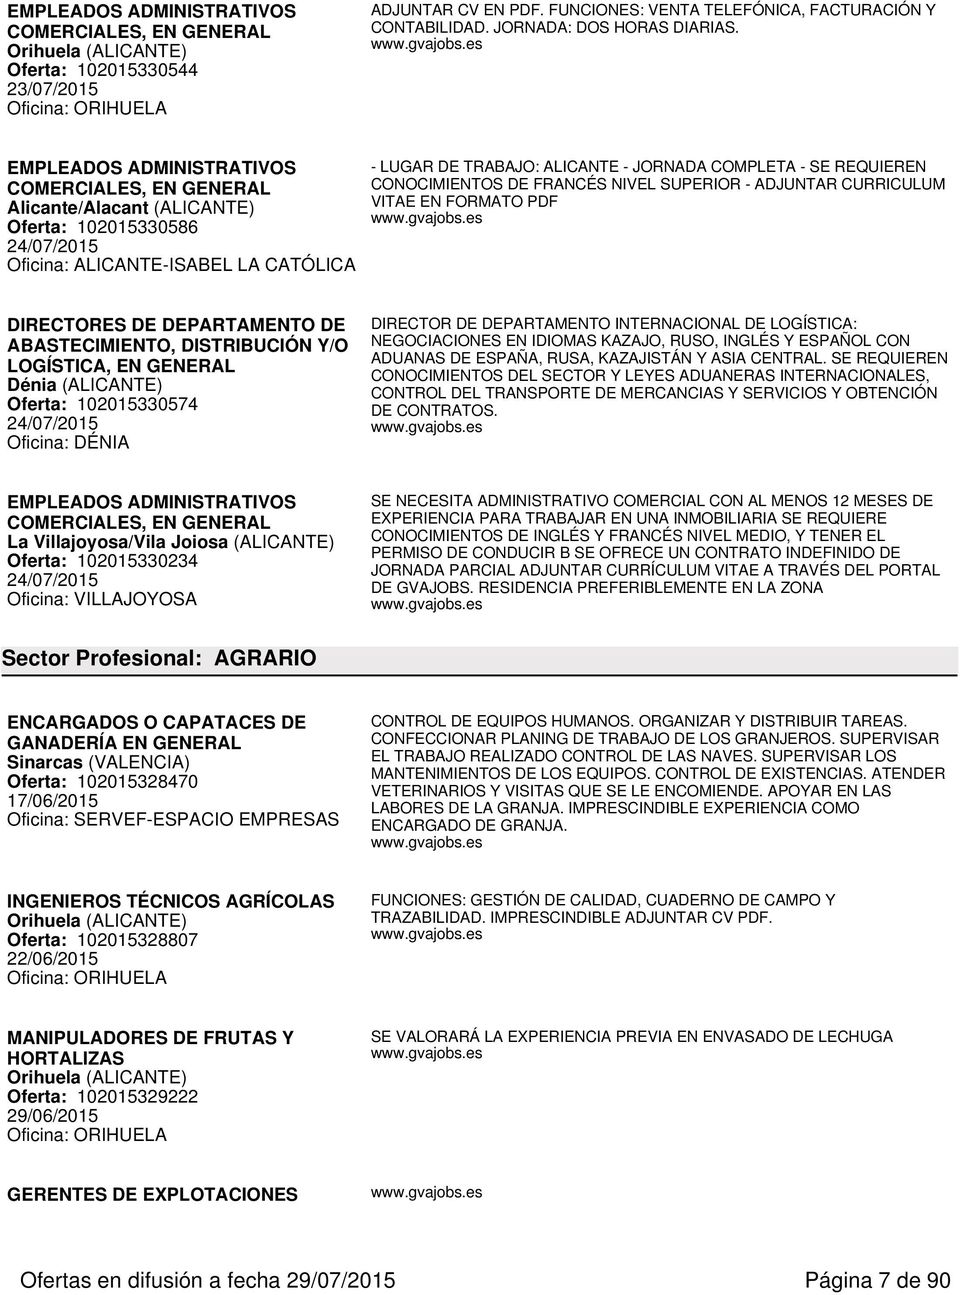 EMPLEADOS ADMINISTRATIVOS COMERCIALES, EN Alicante/Alacant (ALICANTE) Oferta: 102015330586 24/07/2015 Oficina: ALICANTE-ISABEL LA CATÓLICA - LUGAR DE TRABAJO: ALICANTE - JORNADA COMPLETA - SE